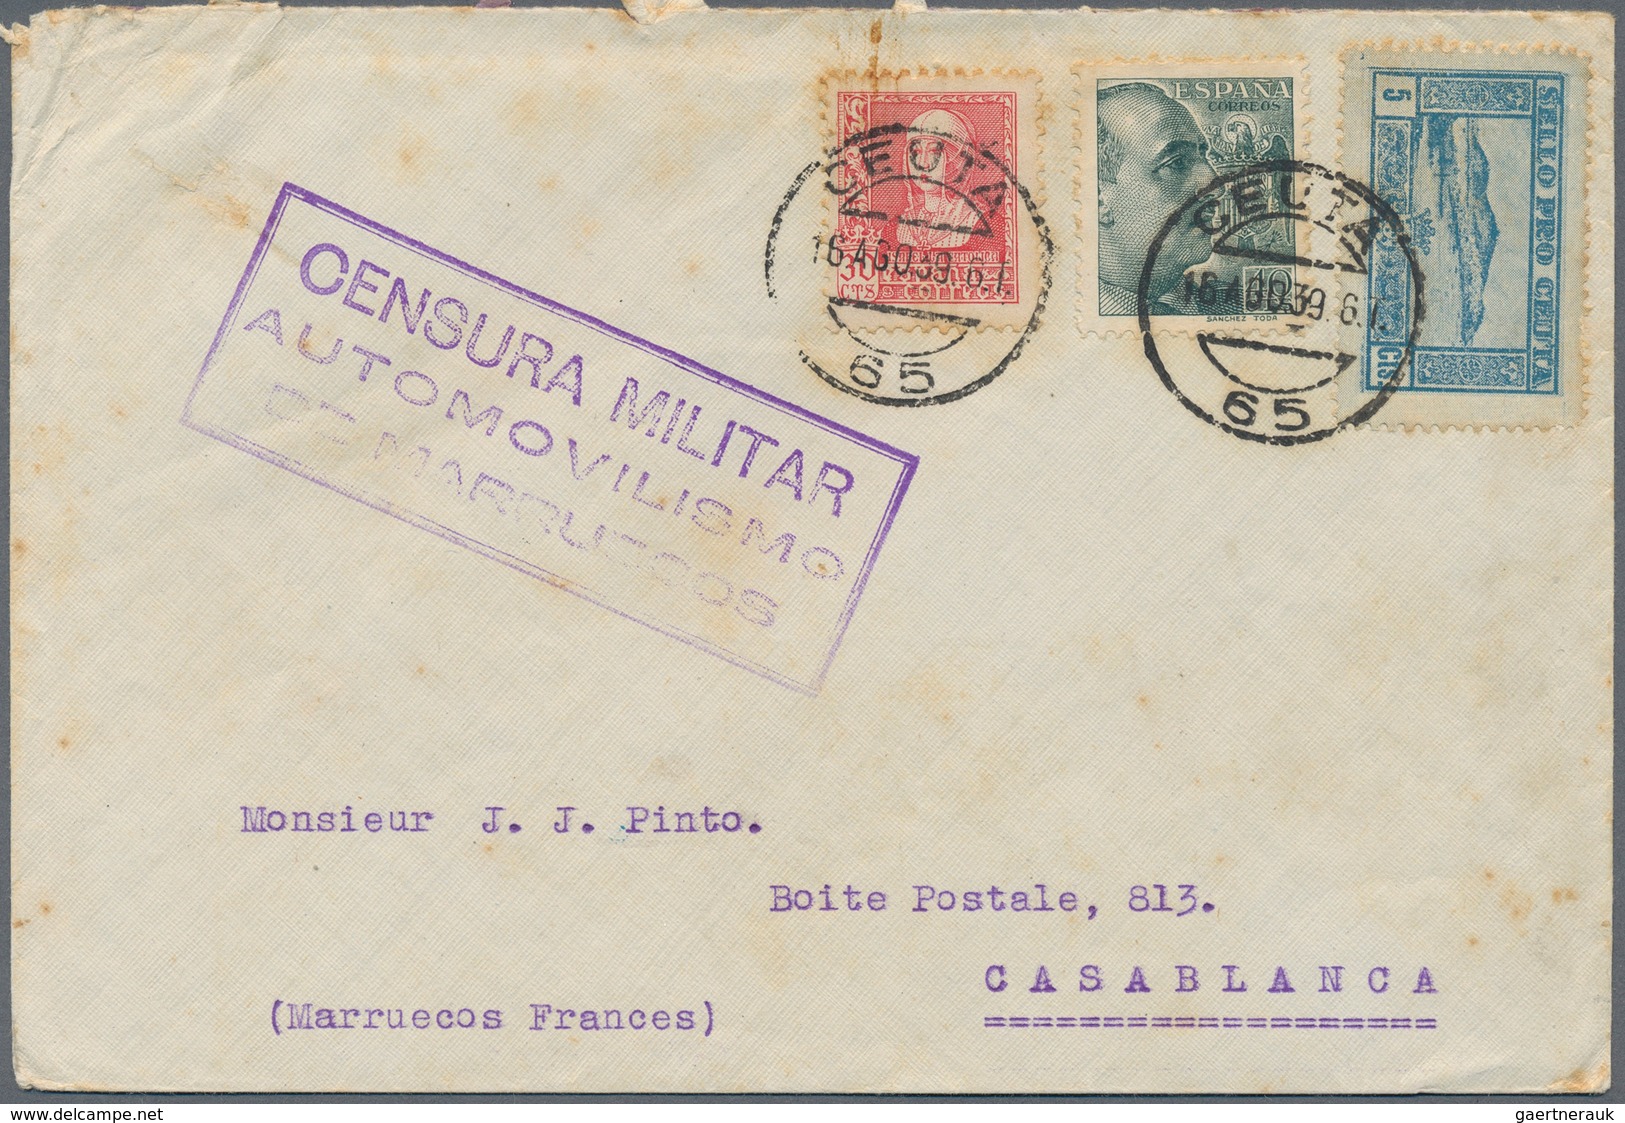 Spanische Post In Marokko: 1939. Censored Envelope (stains) To Casablanca Bearing Spain Yvert 660, 3 - Spanish Morocco